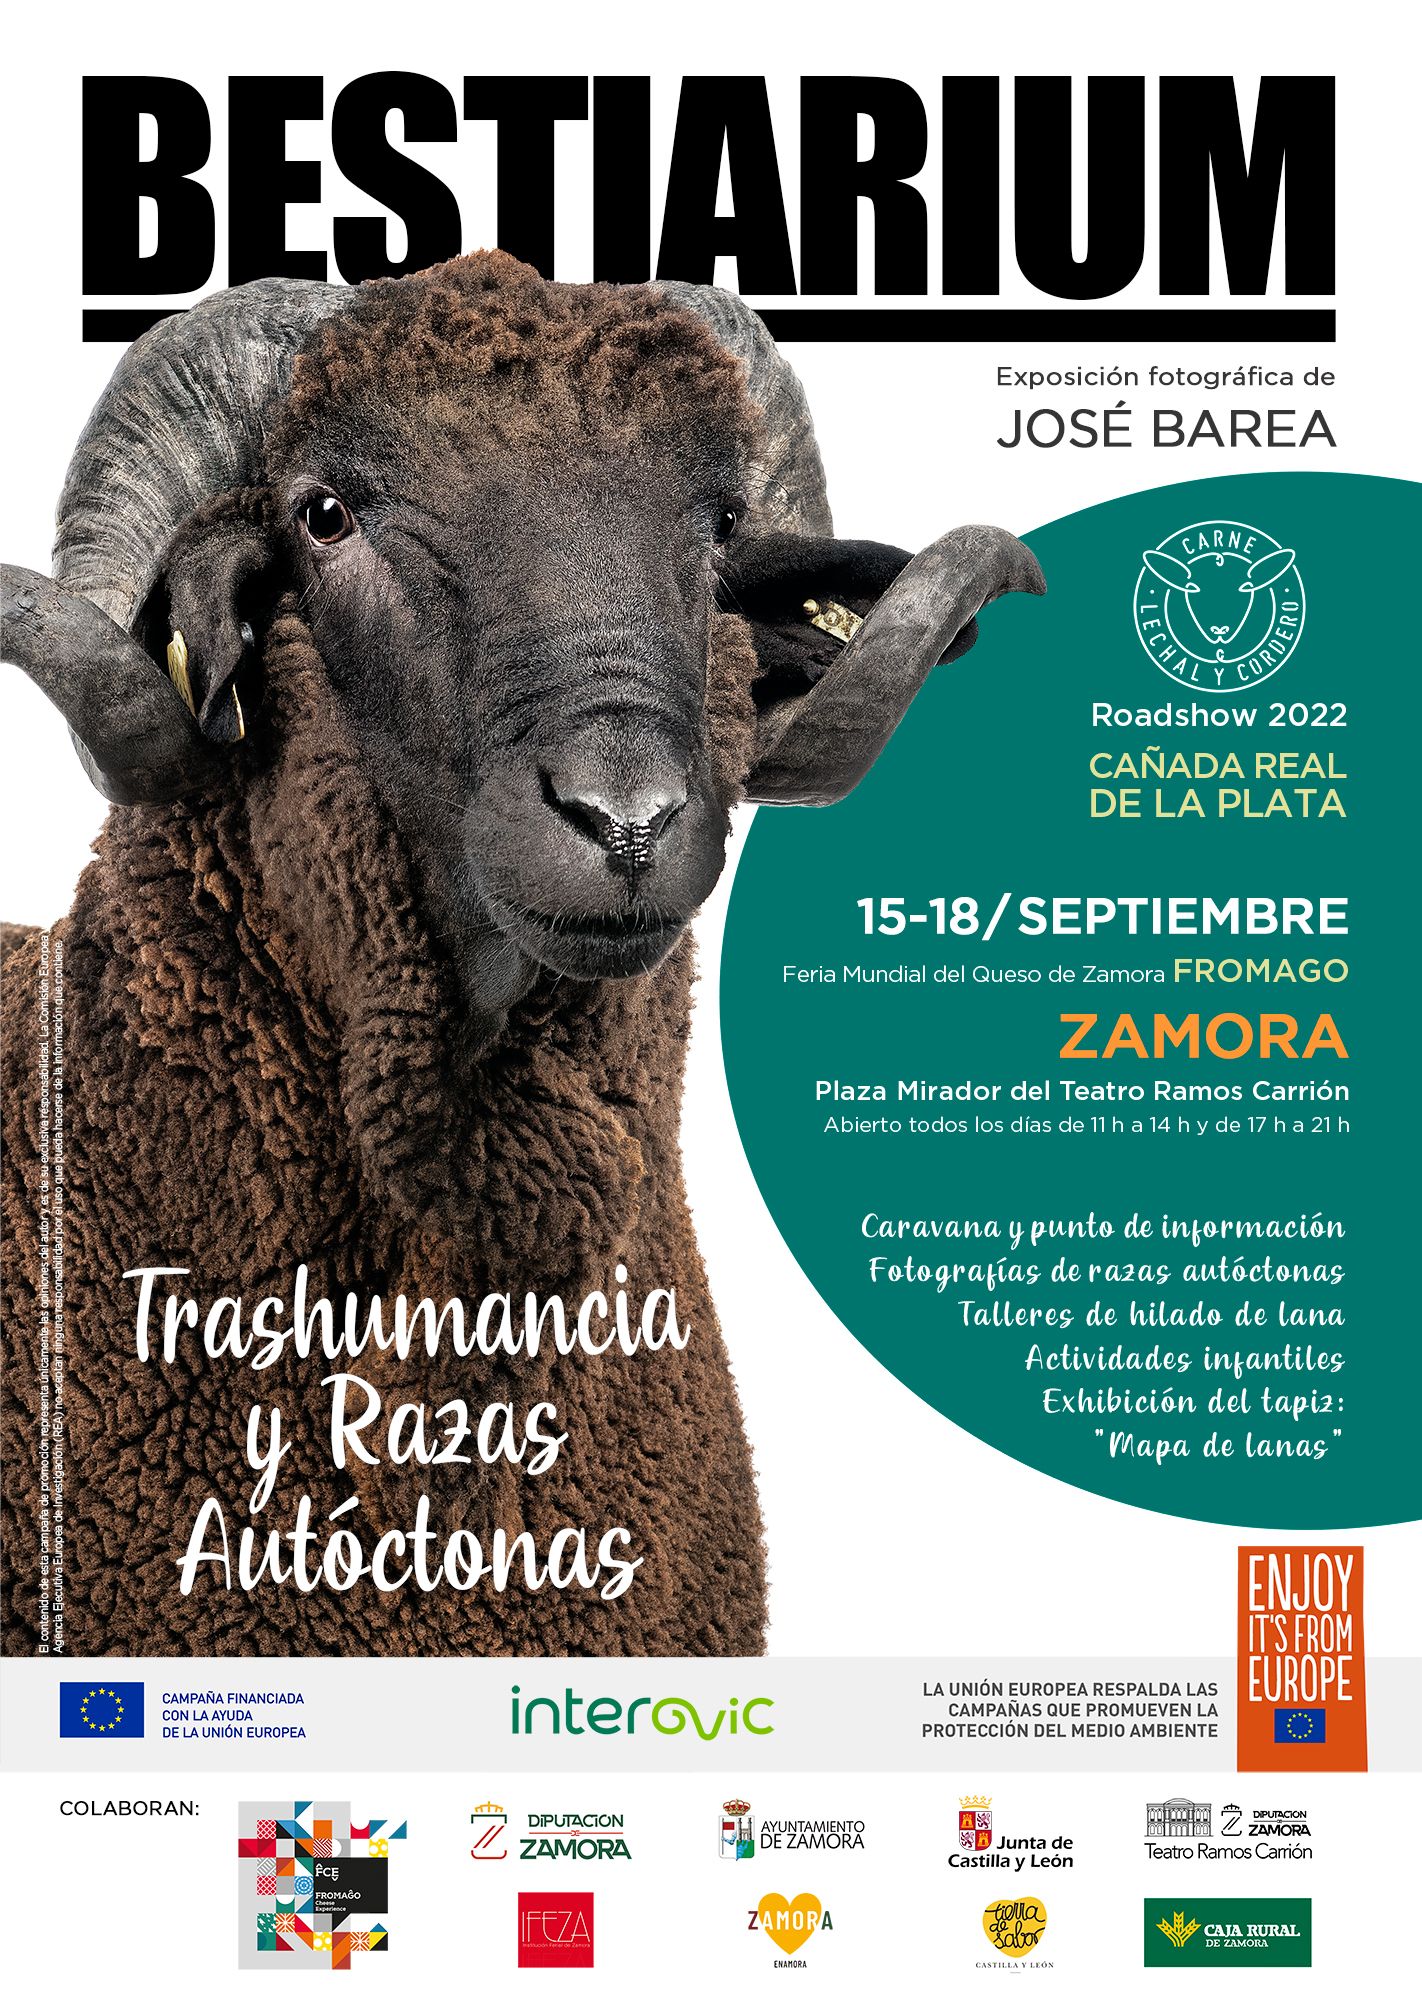 Carte Expo Bestiarium Zamora